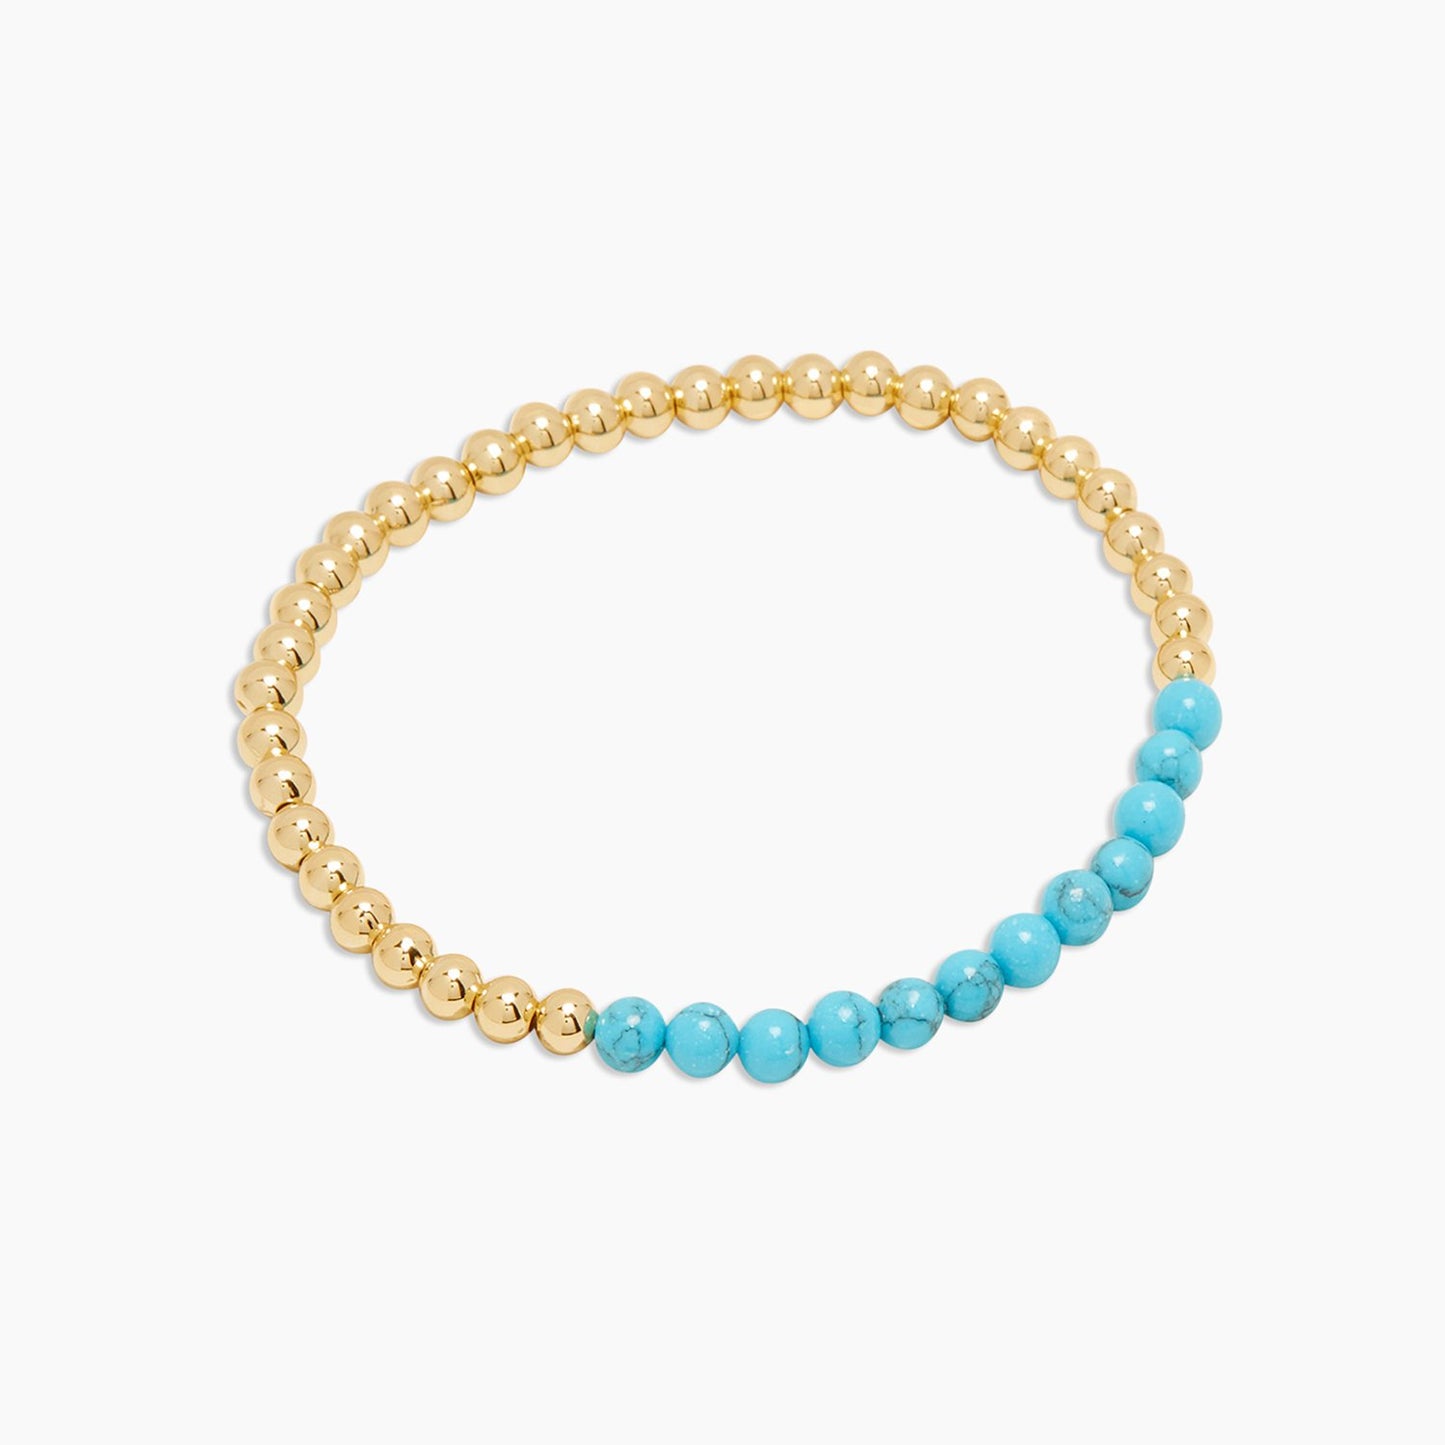 Gorjana Gorjana - Power Gemstone Aura Bracelet - Turquoise for Healing available at The Good Life Boutique